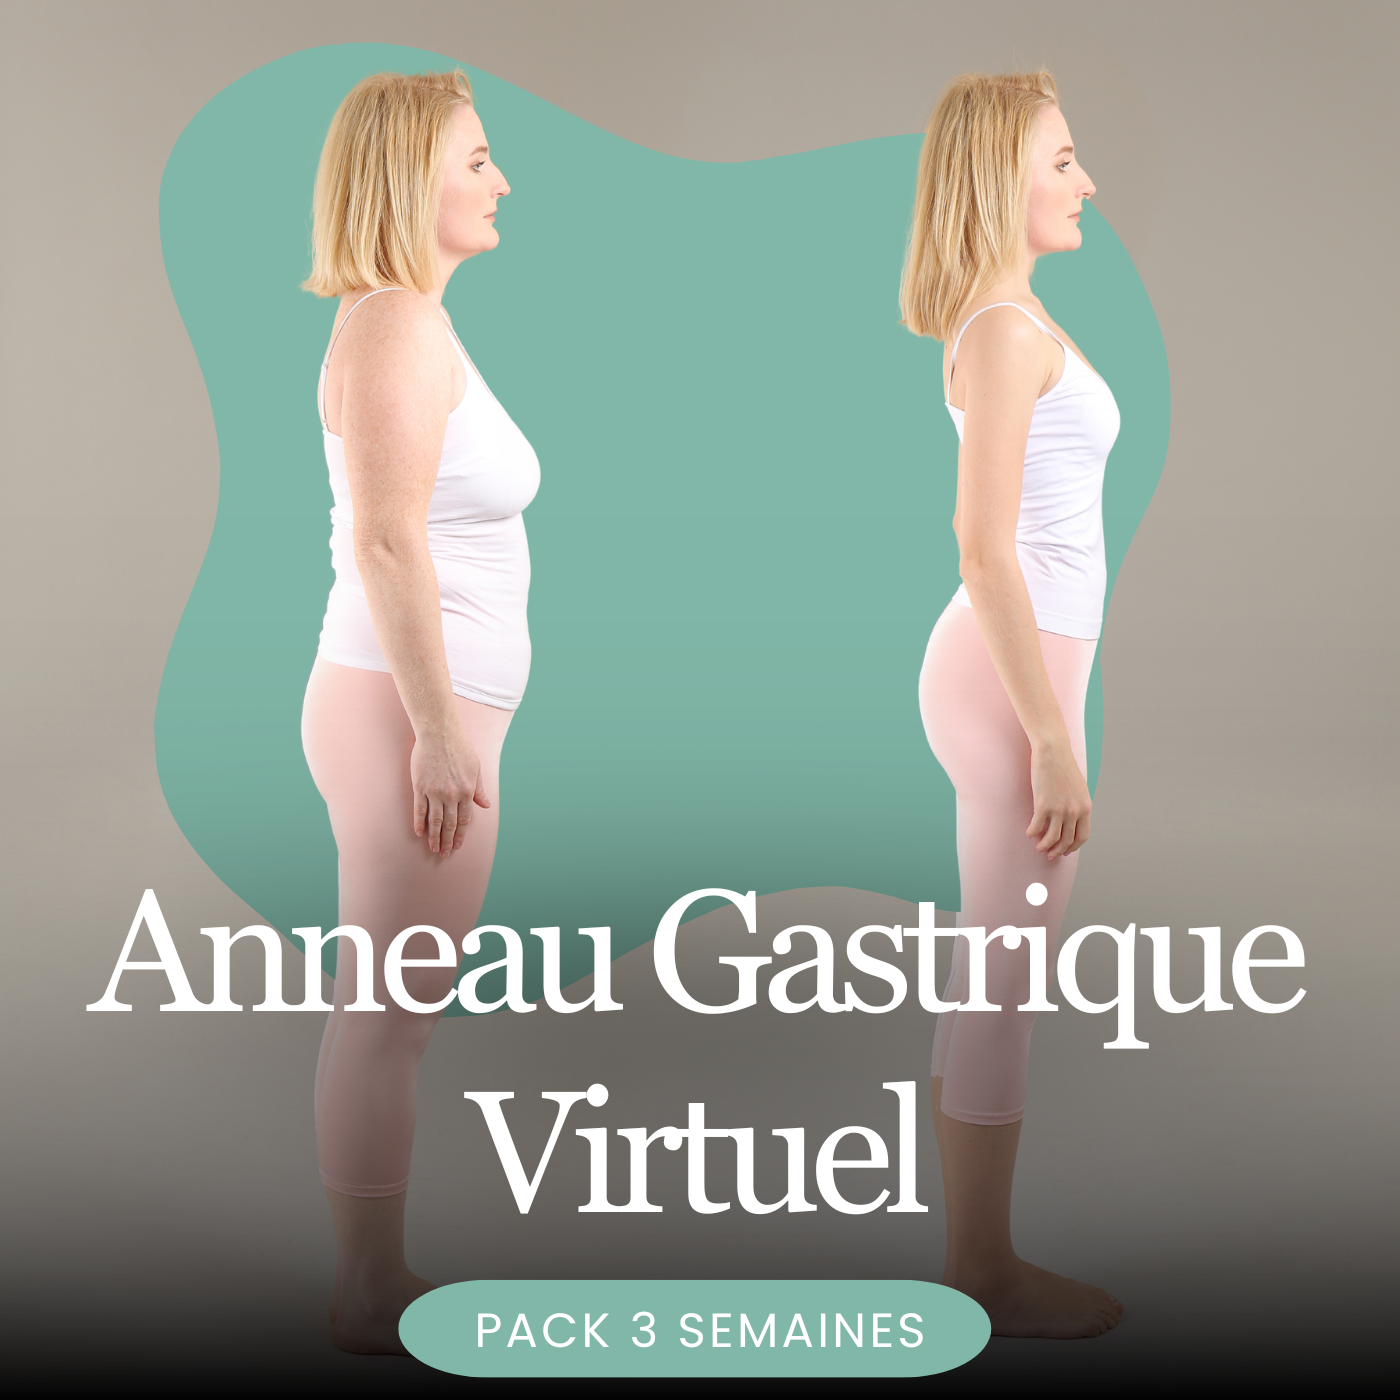 Anneau Gastrique Virtuel Pack 3 semaines – Clearmindsfr